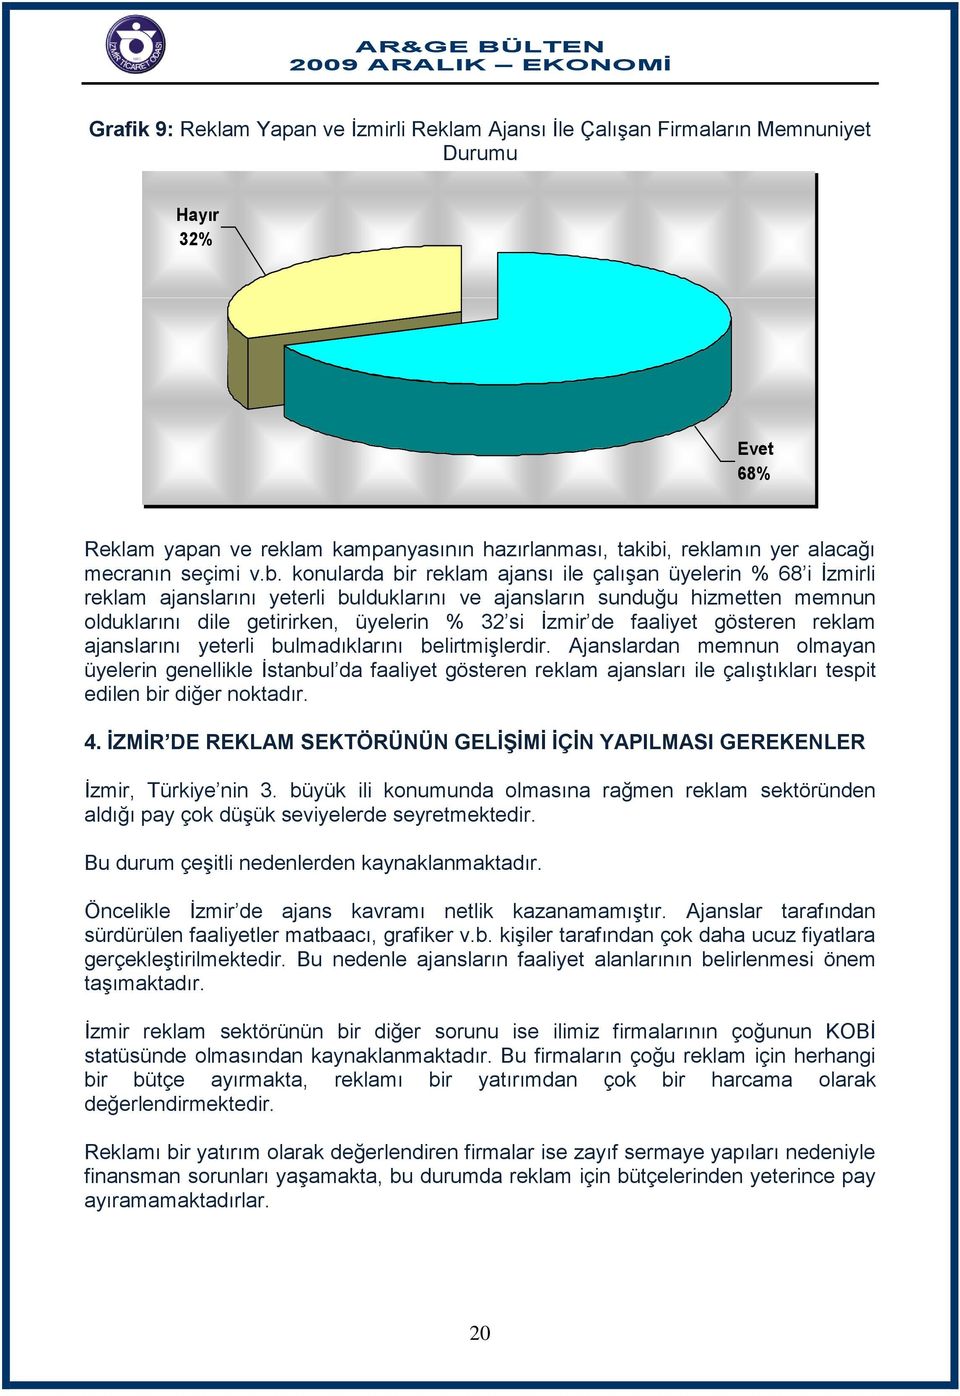 konularda bir reklam ajansı ile çalışan üyelerin % 68 i İzmirli reklam ajanslarını yeterli bulduklarını ve ajansların sunduğu hizmetten memnun olduklarını dile getirirken, üyelerin % 32 si İzmir de